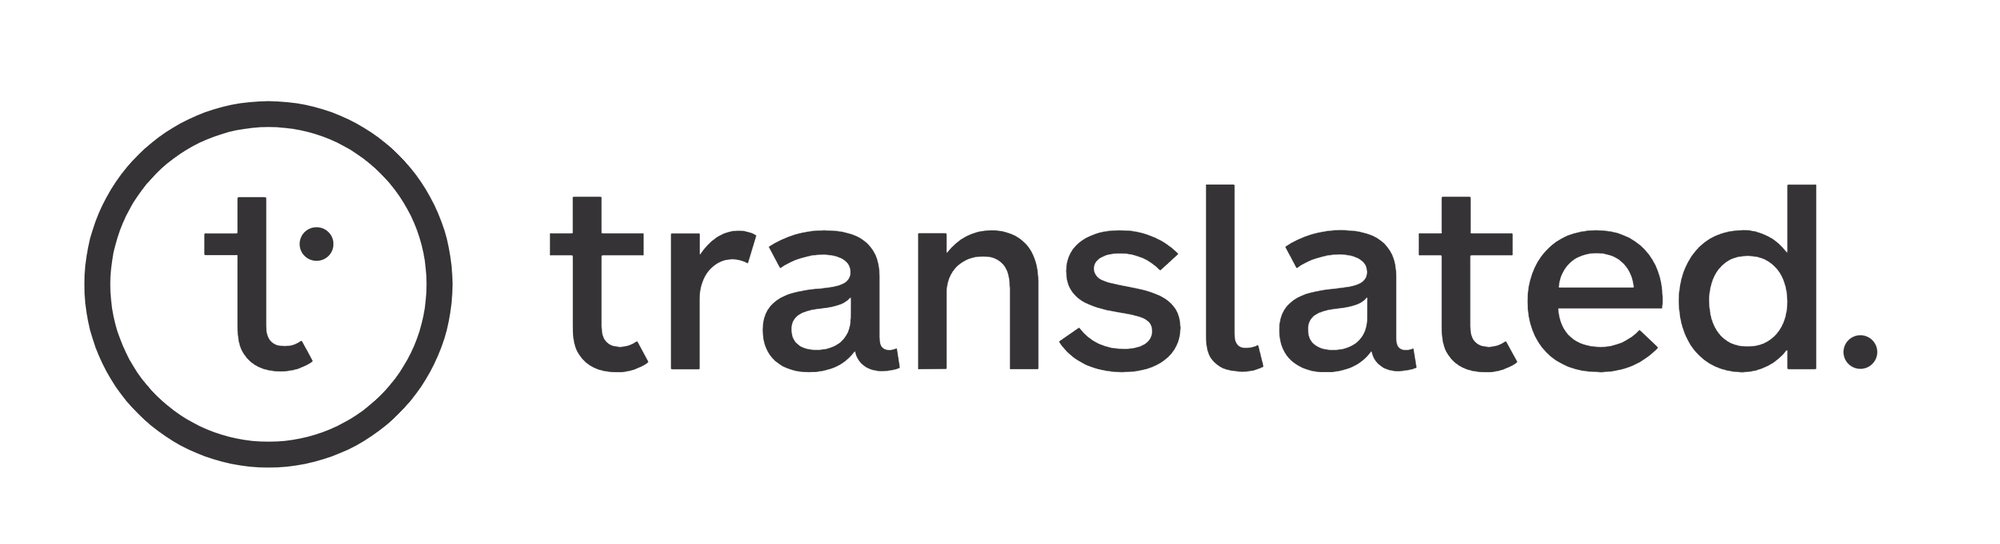 Translated-logo